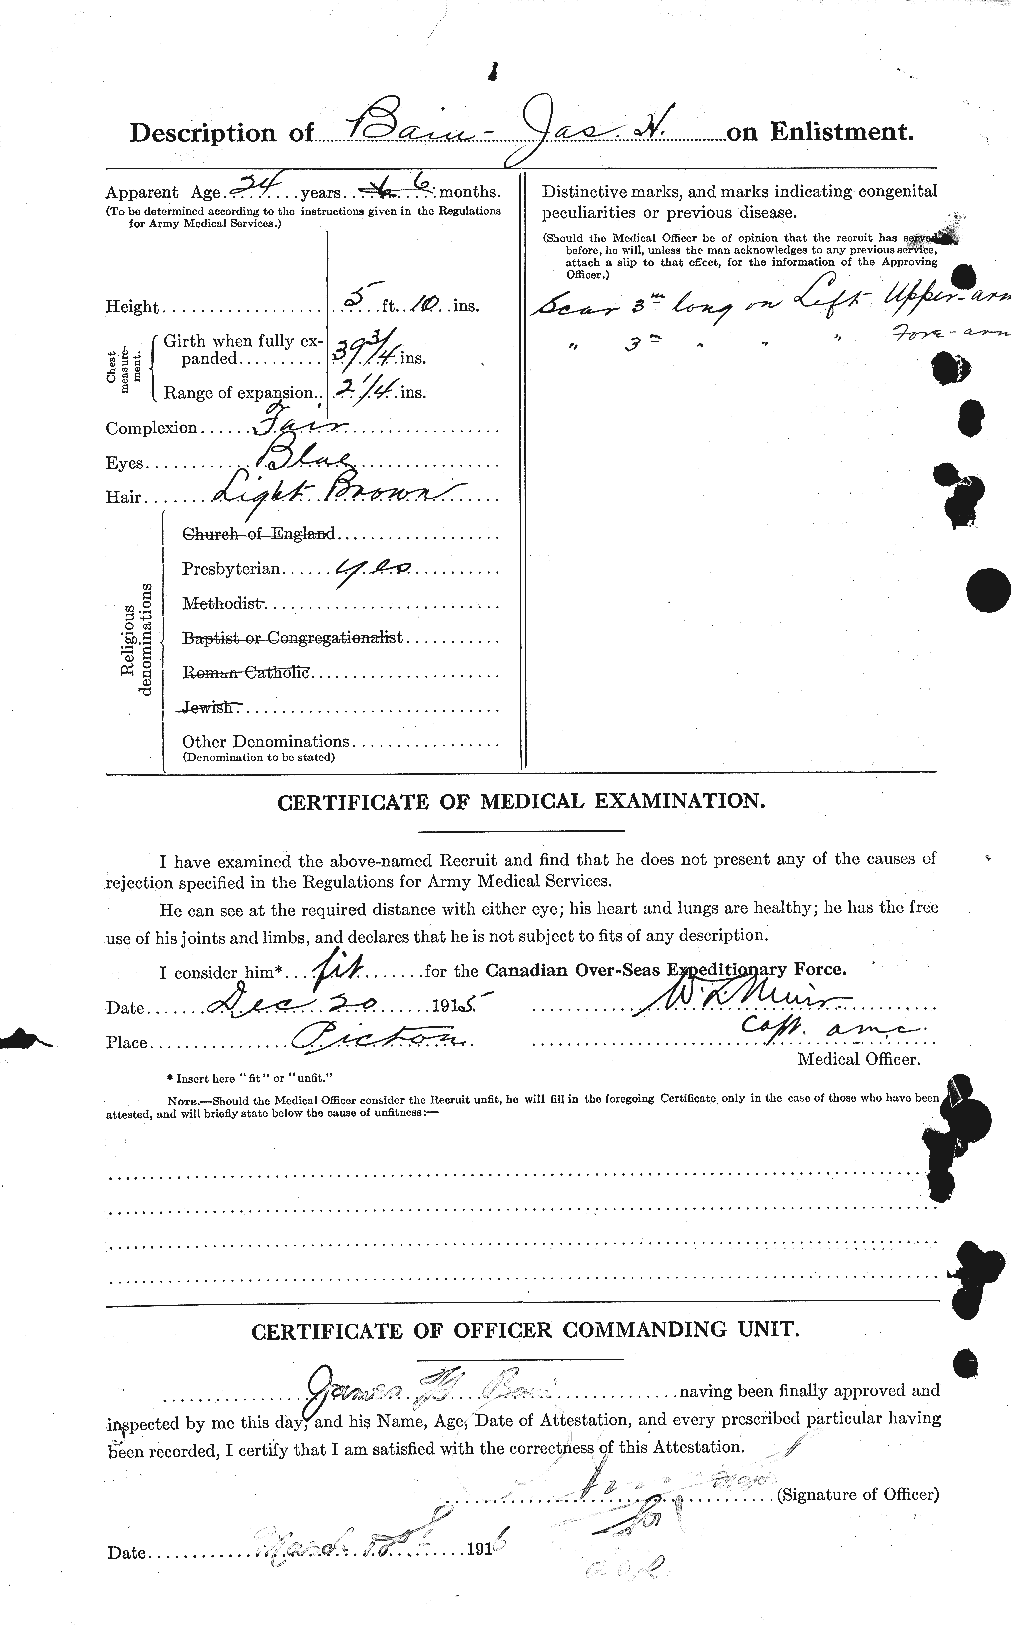 Dossiers du Personnel de la Première Guerre mondiale - CEC 226100b